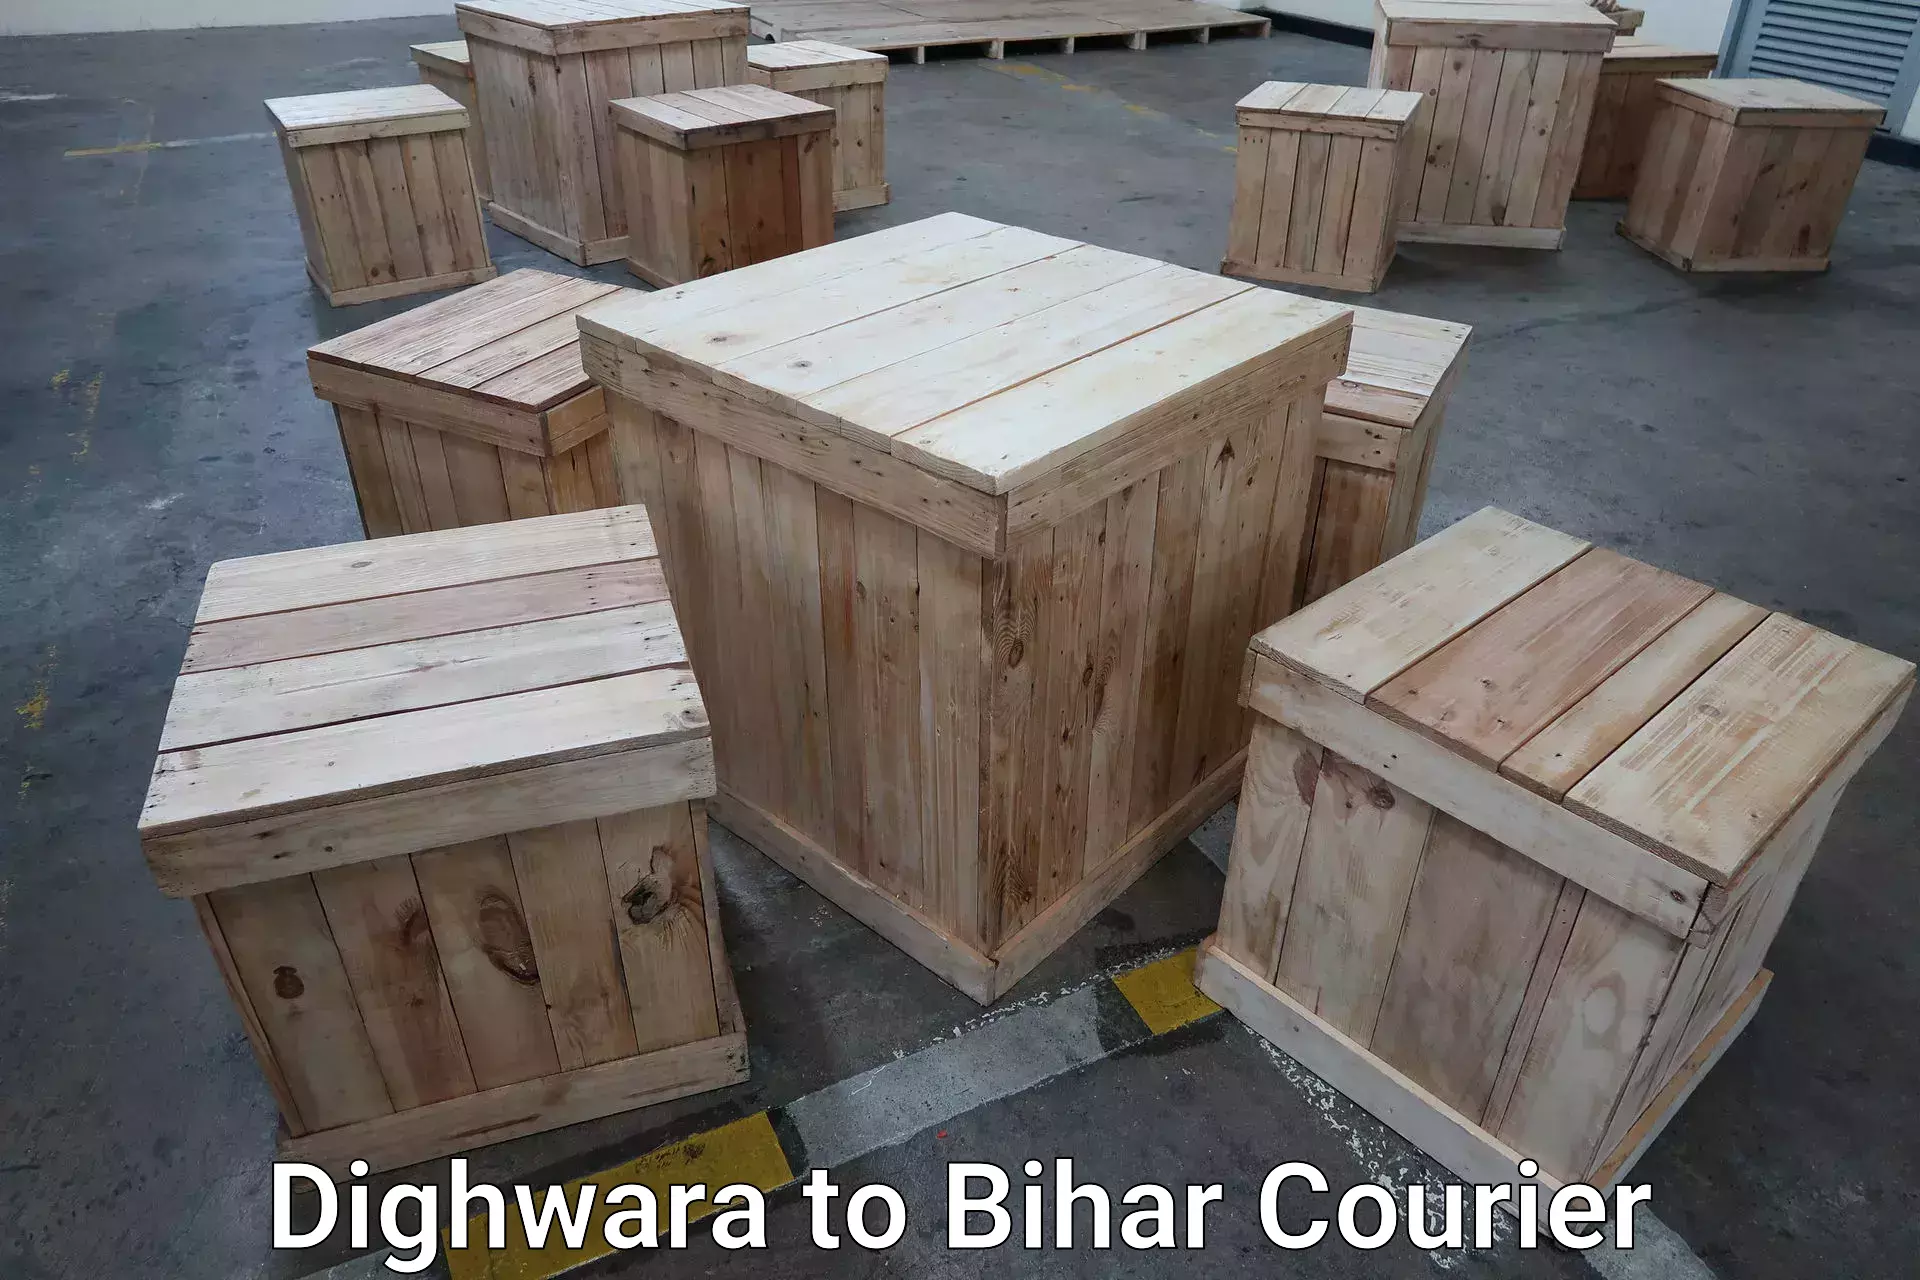 Baggage transport technology Dighwara to Bihar